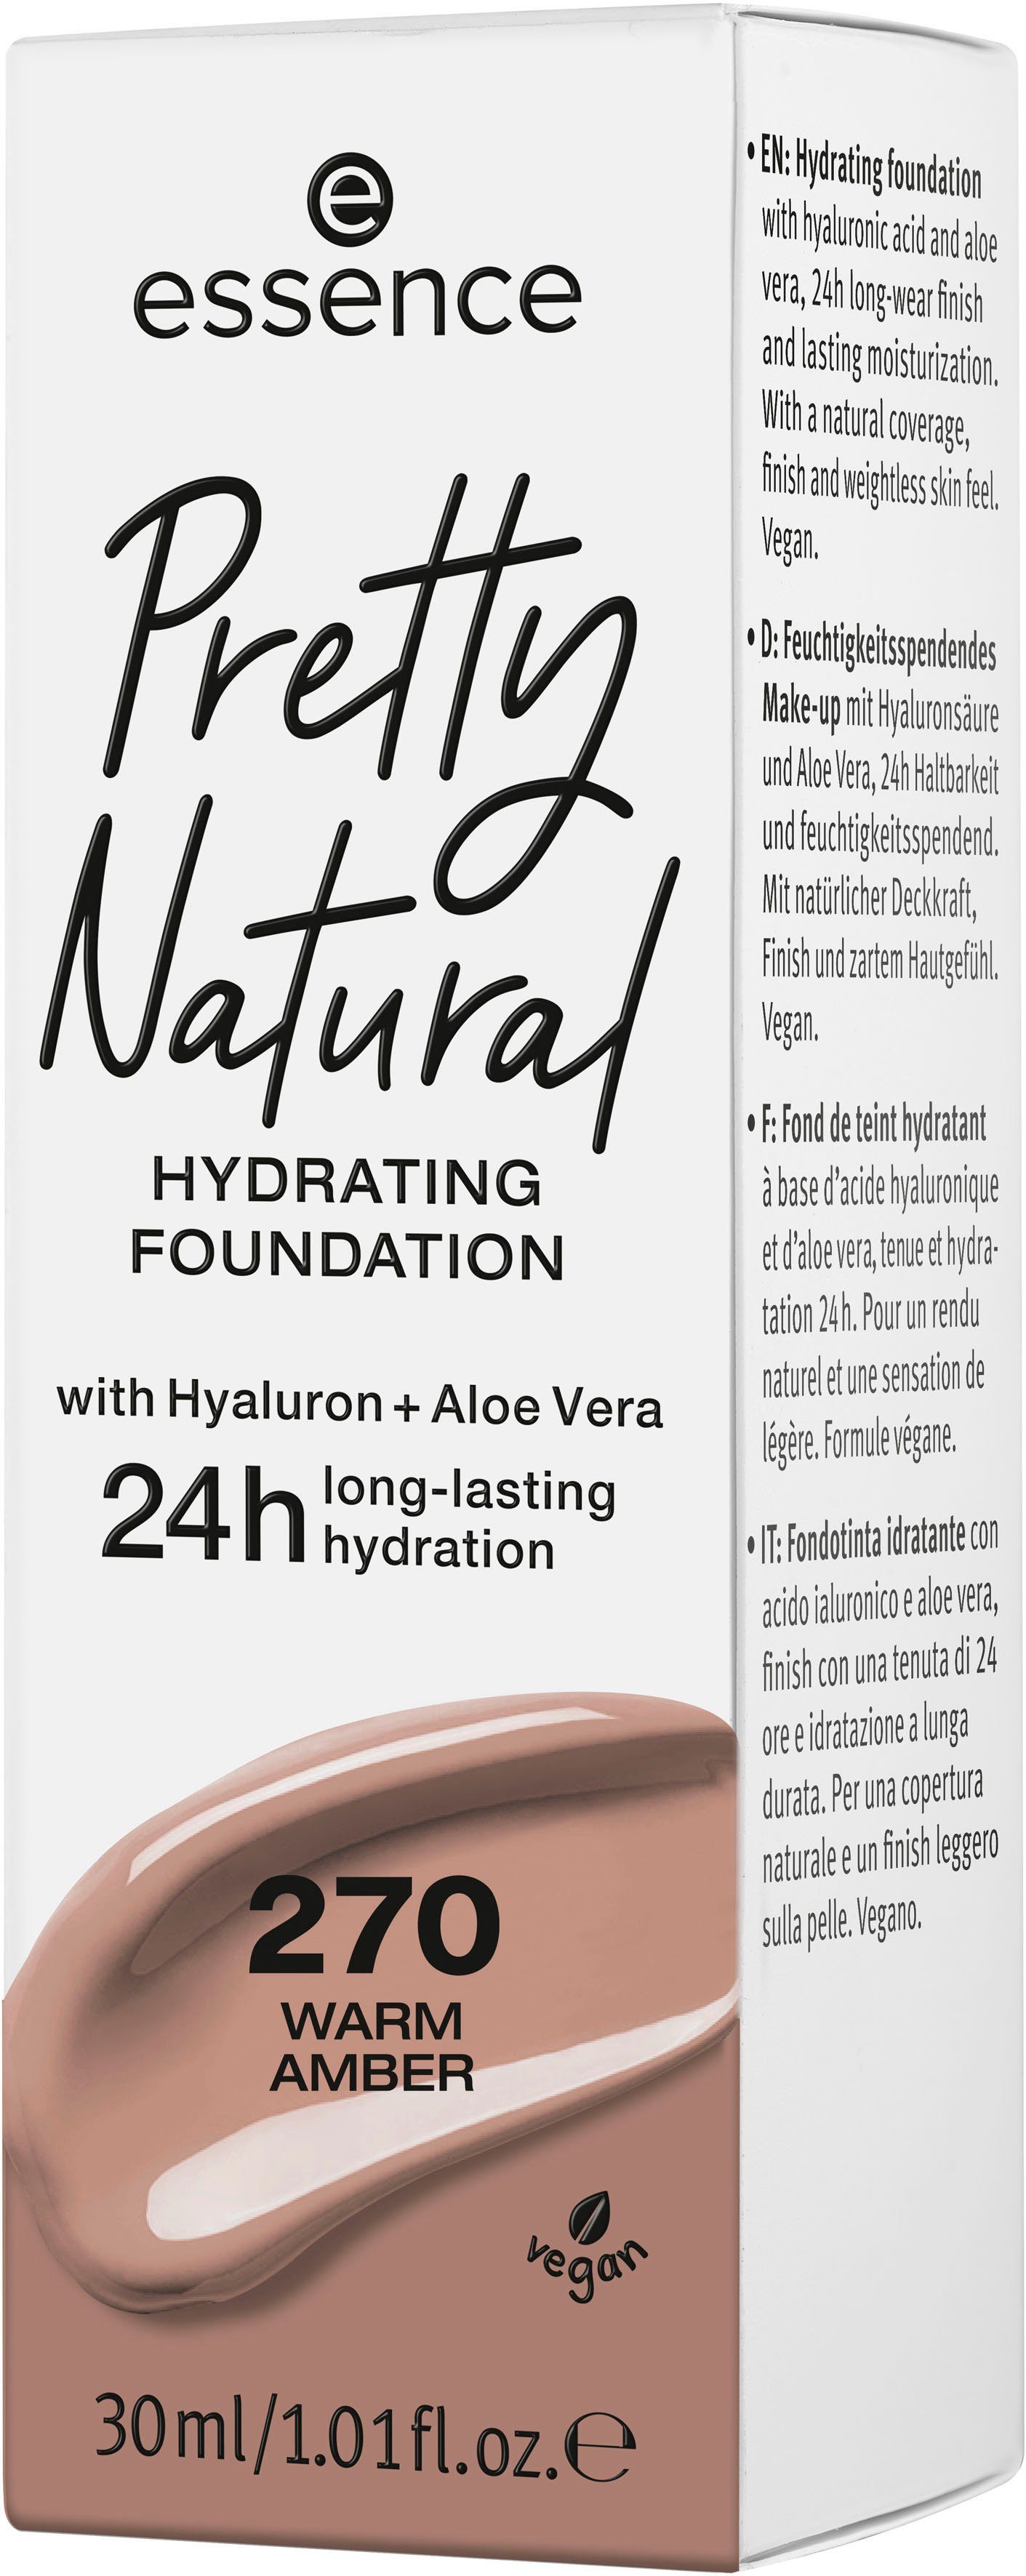 Warm HYDRATING, 270 Foundation Pretty 3-tlg. Amber Natural Essence